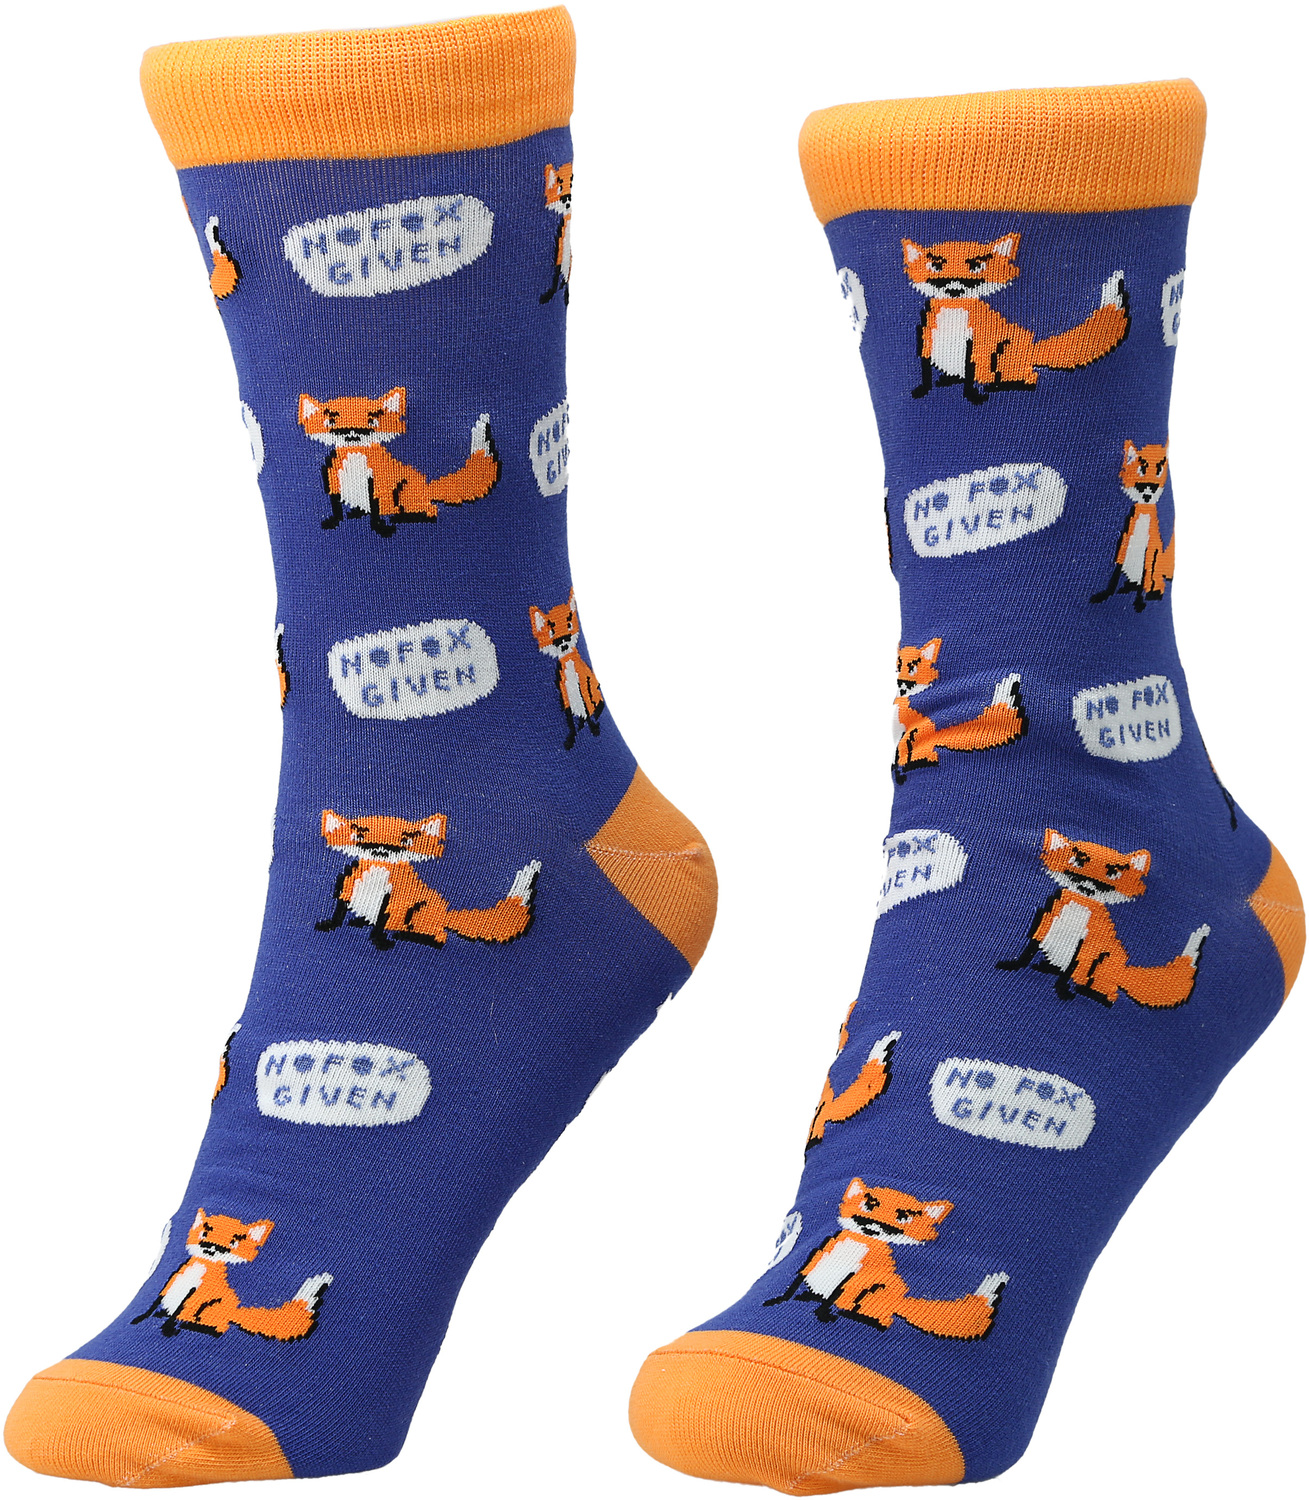 For Fox Sake by Fugly Friends - For Fox Sake - S/M Unisex Cotton Blend Sock